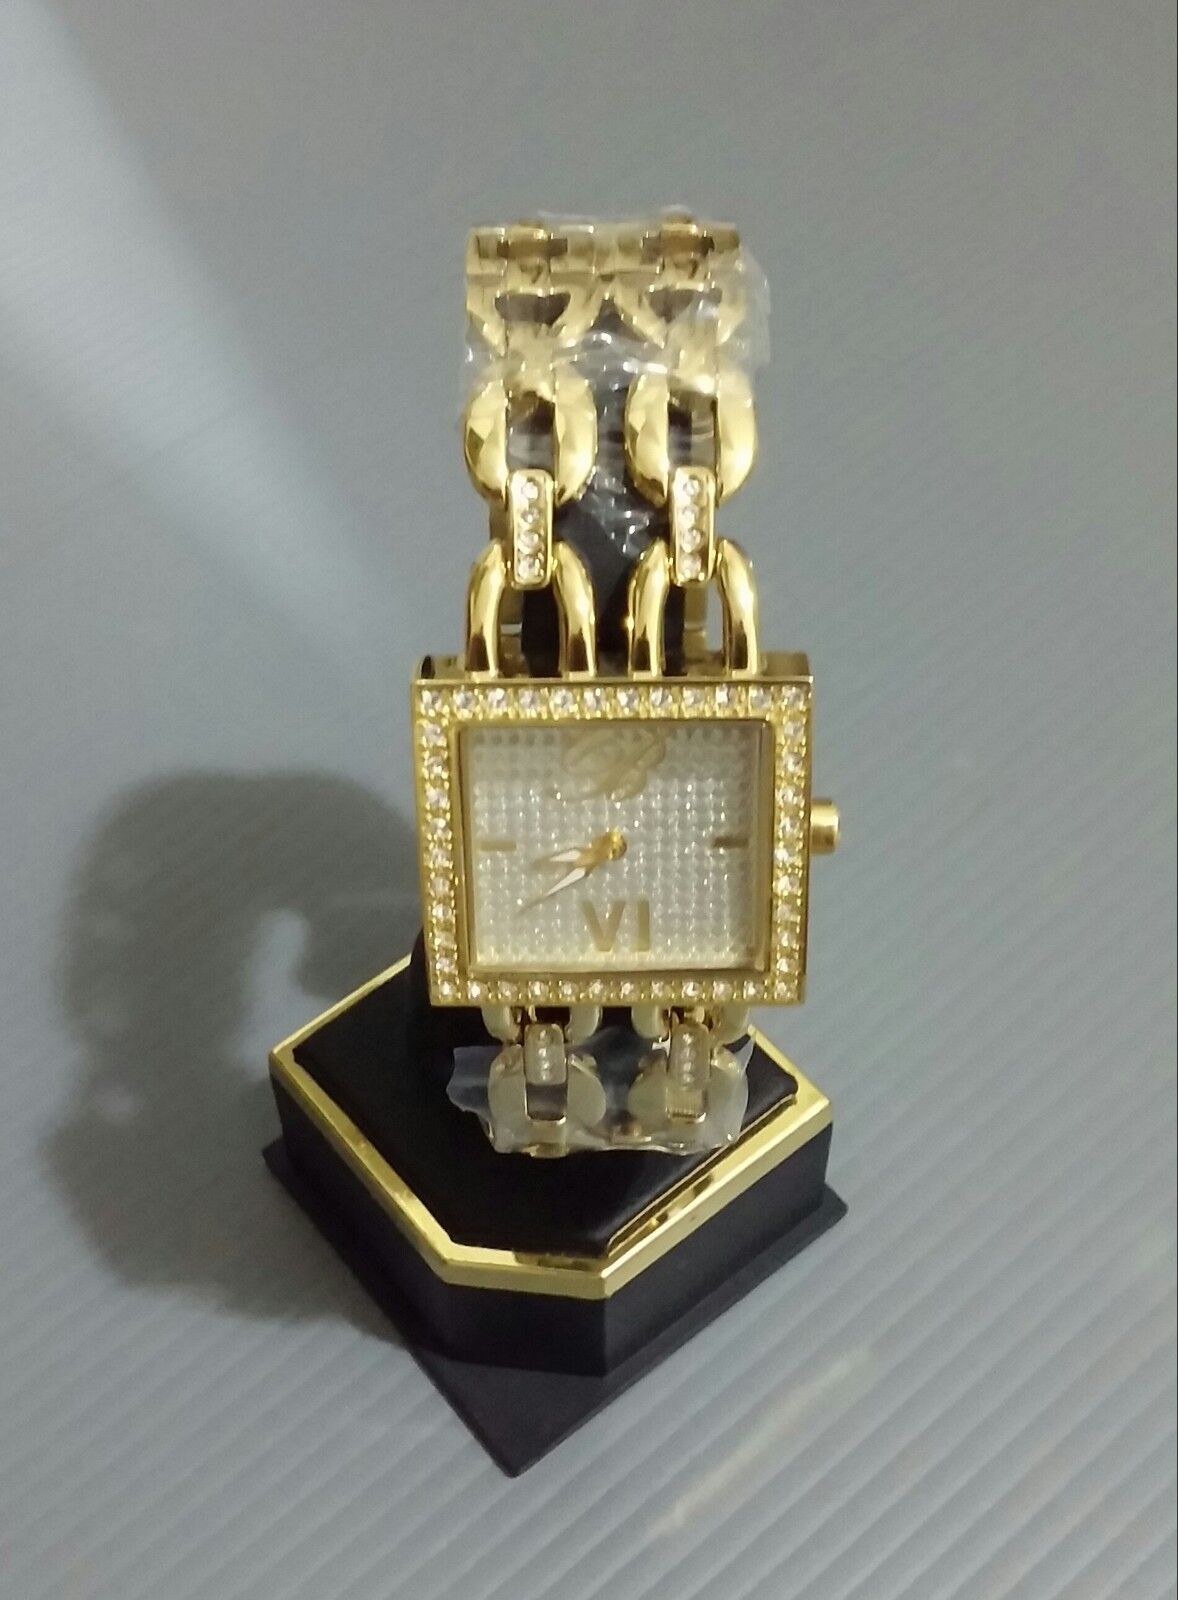 Blumarine orologio quadrato in acciaio inox oro placcato, quadrante argento